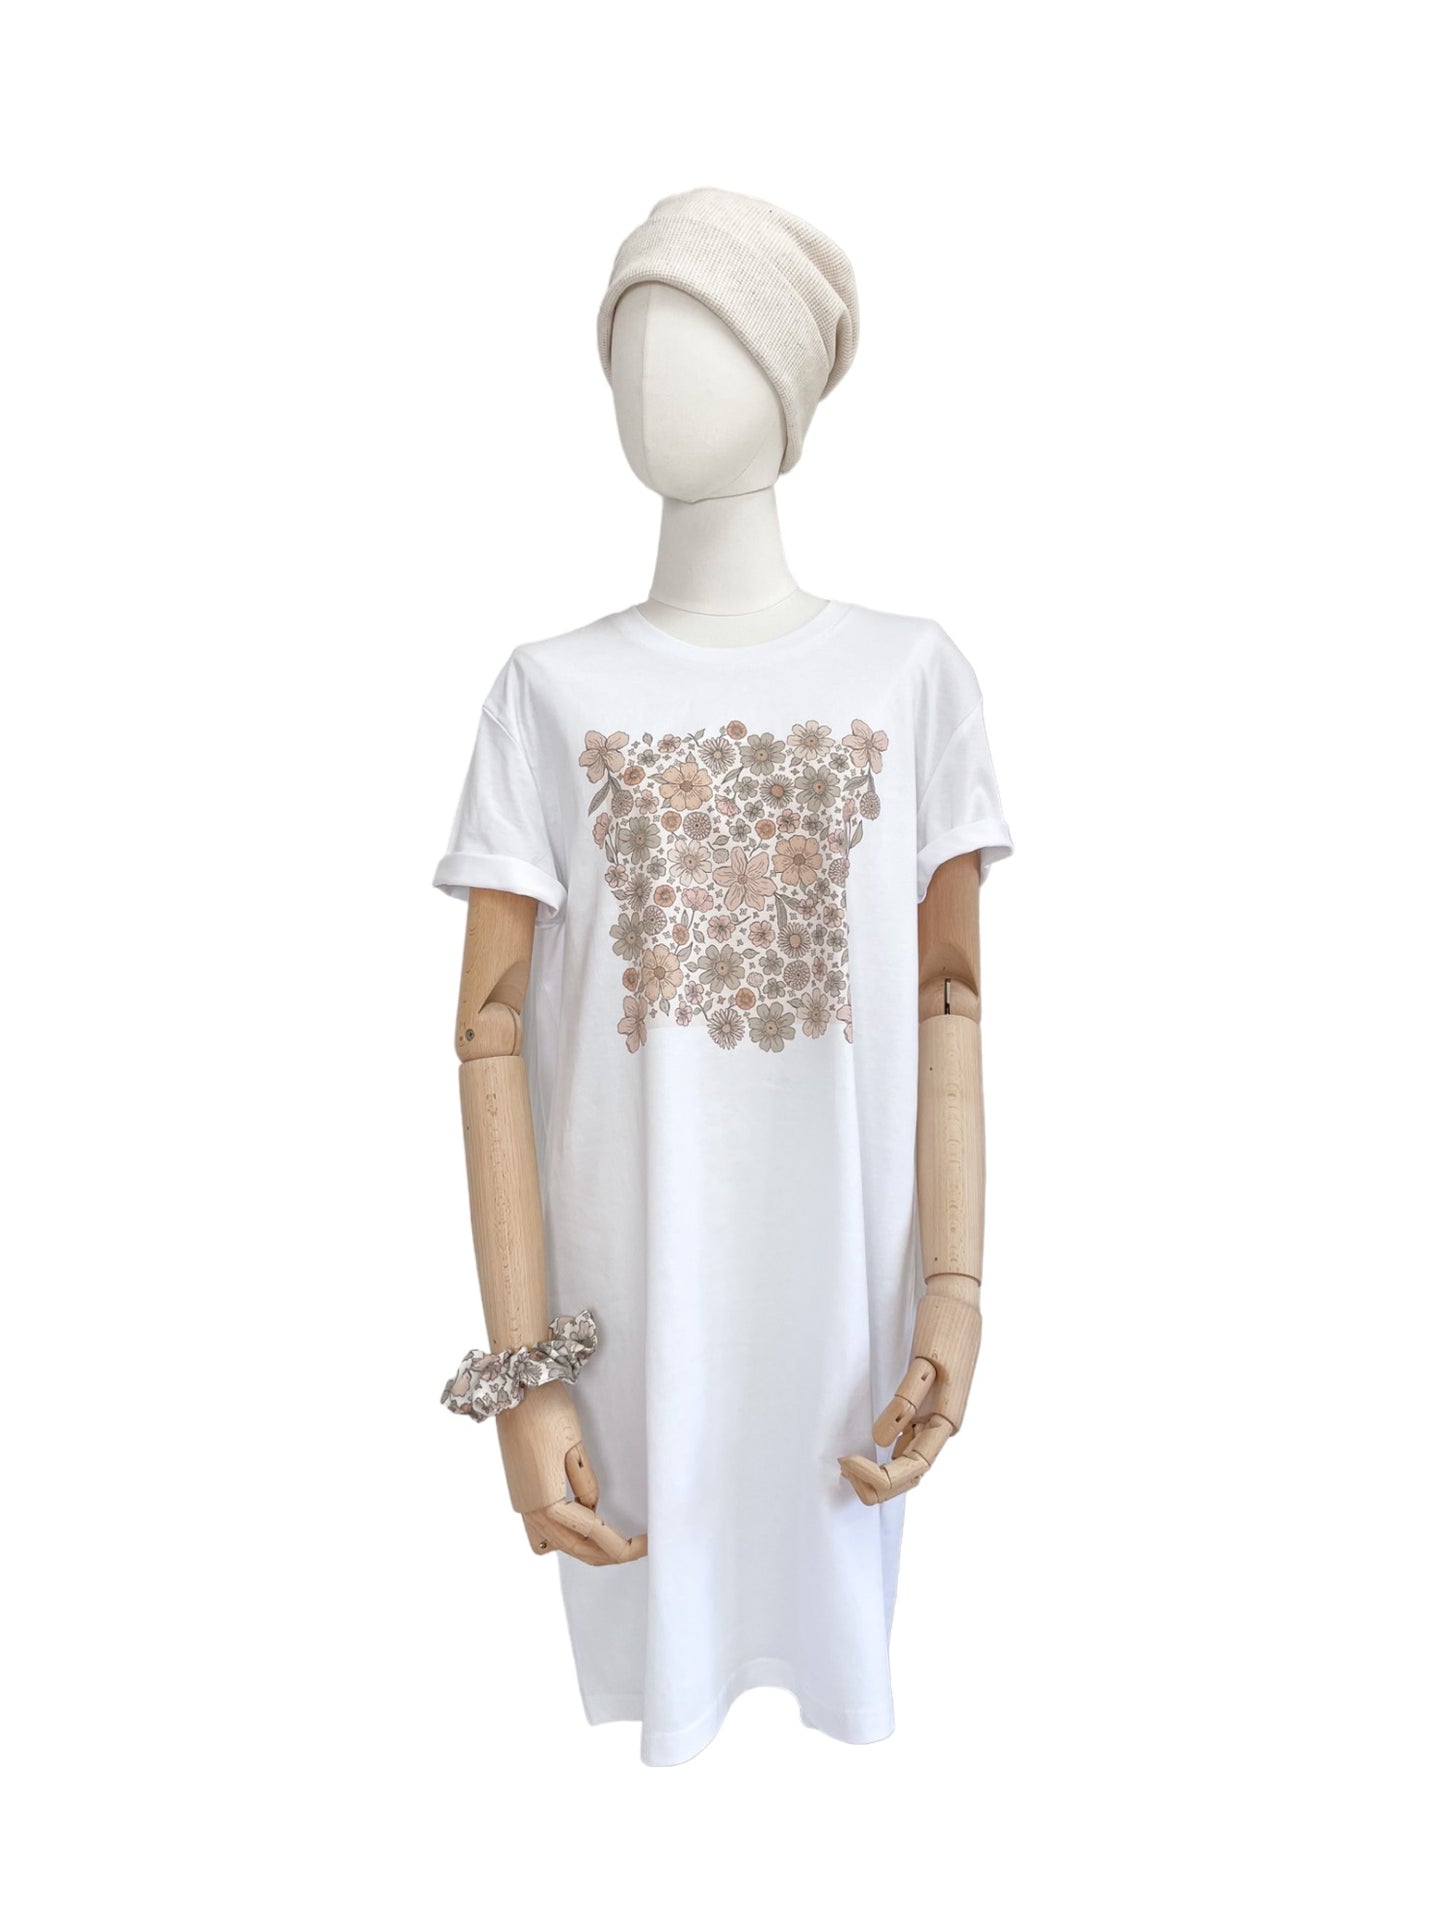 T-shirt dress / Ecru bold floral / white